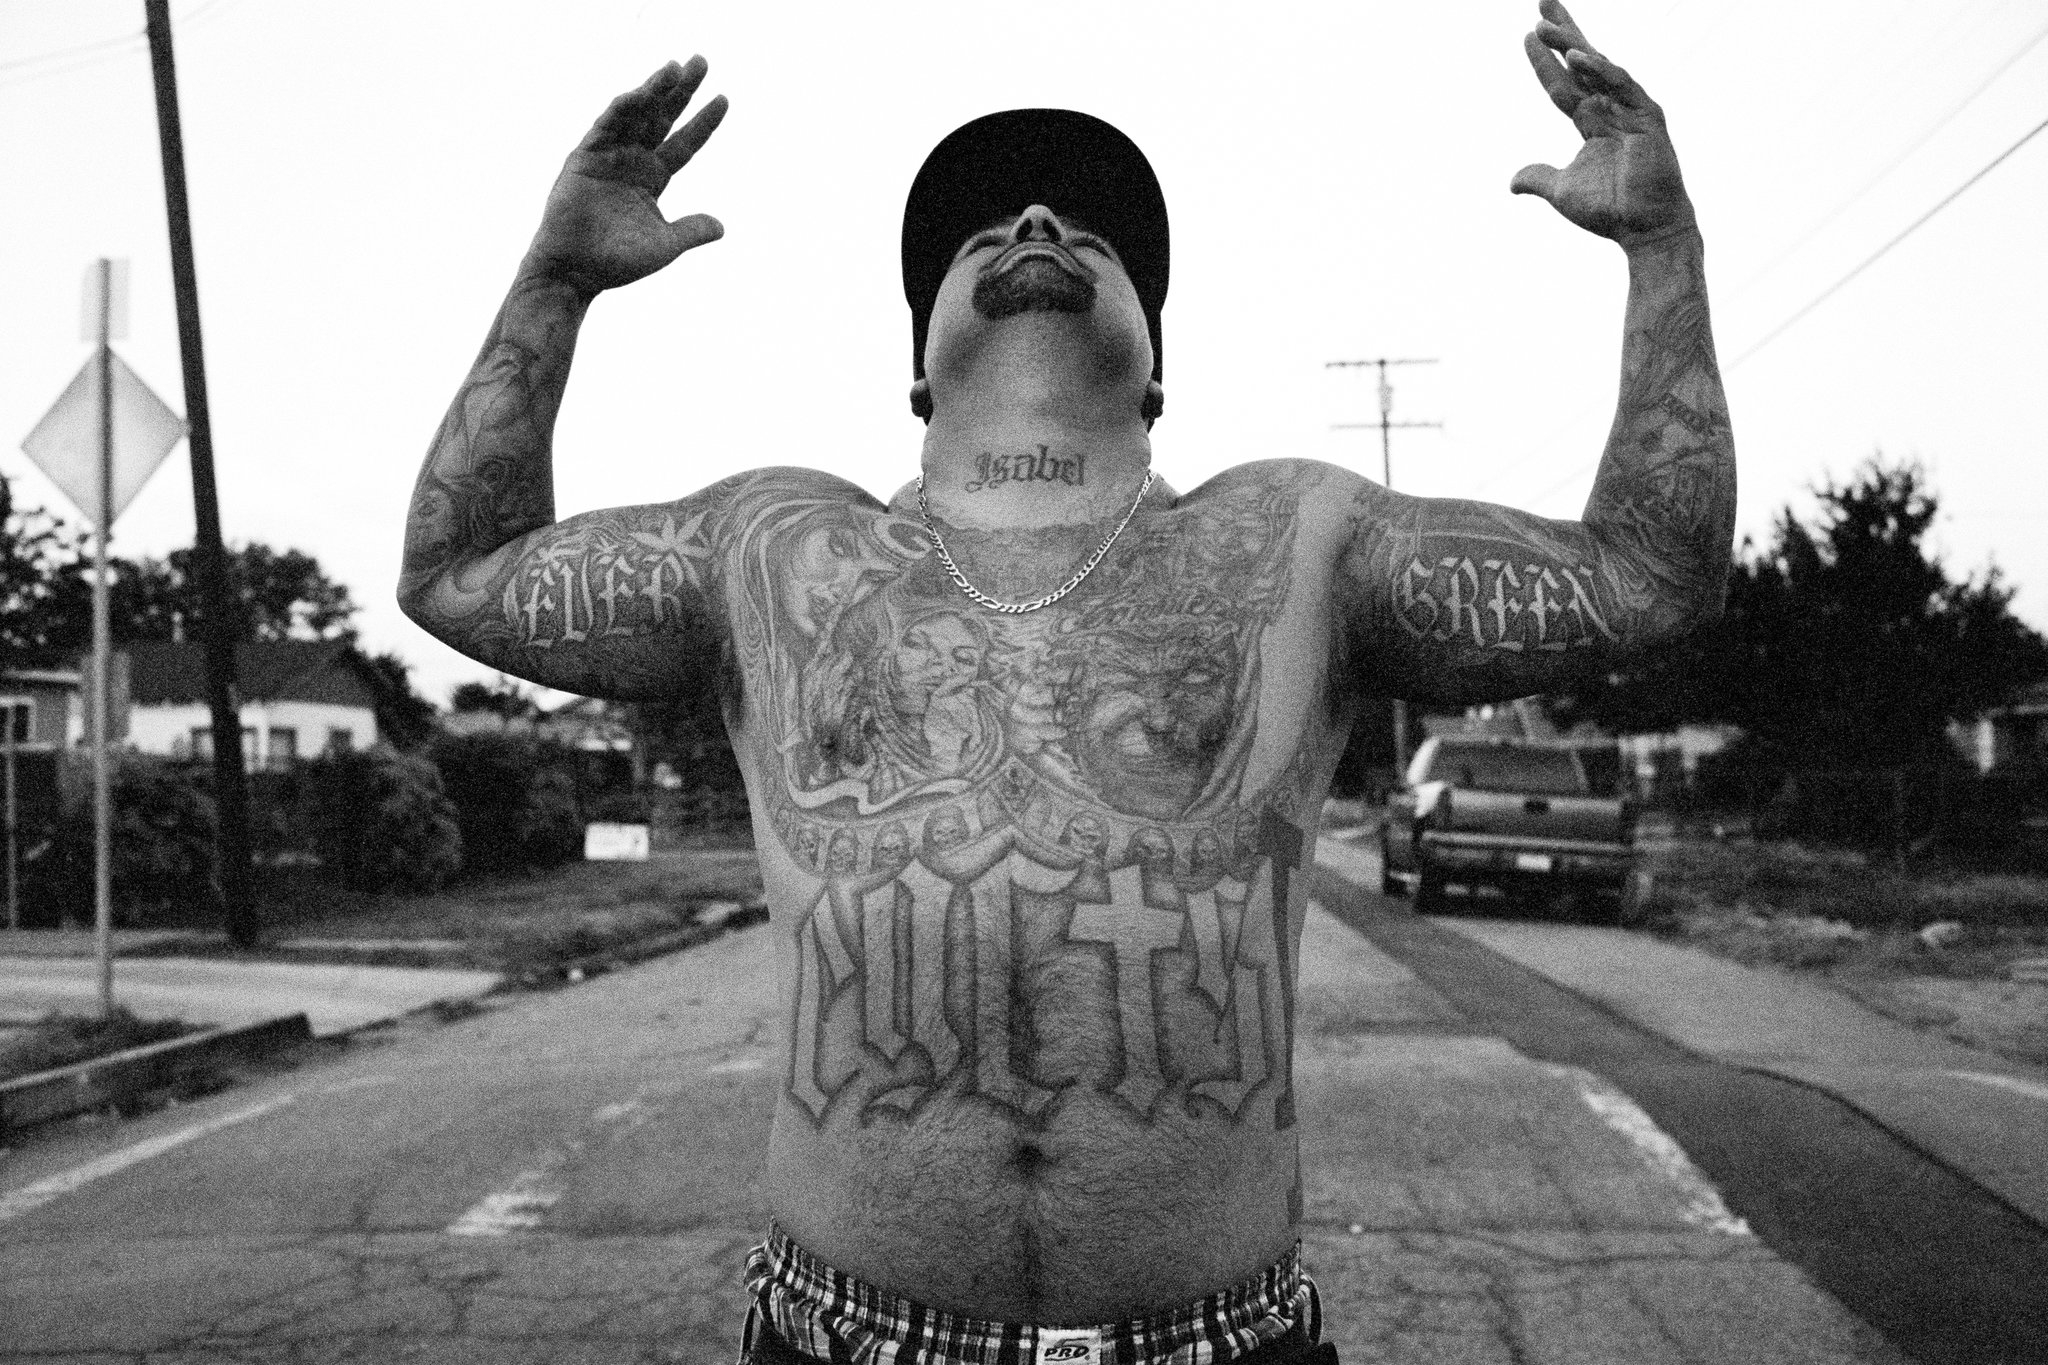 street-side portrait of a tattooed man